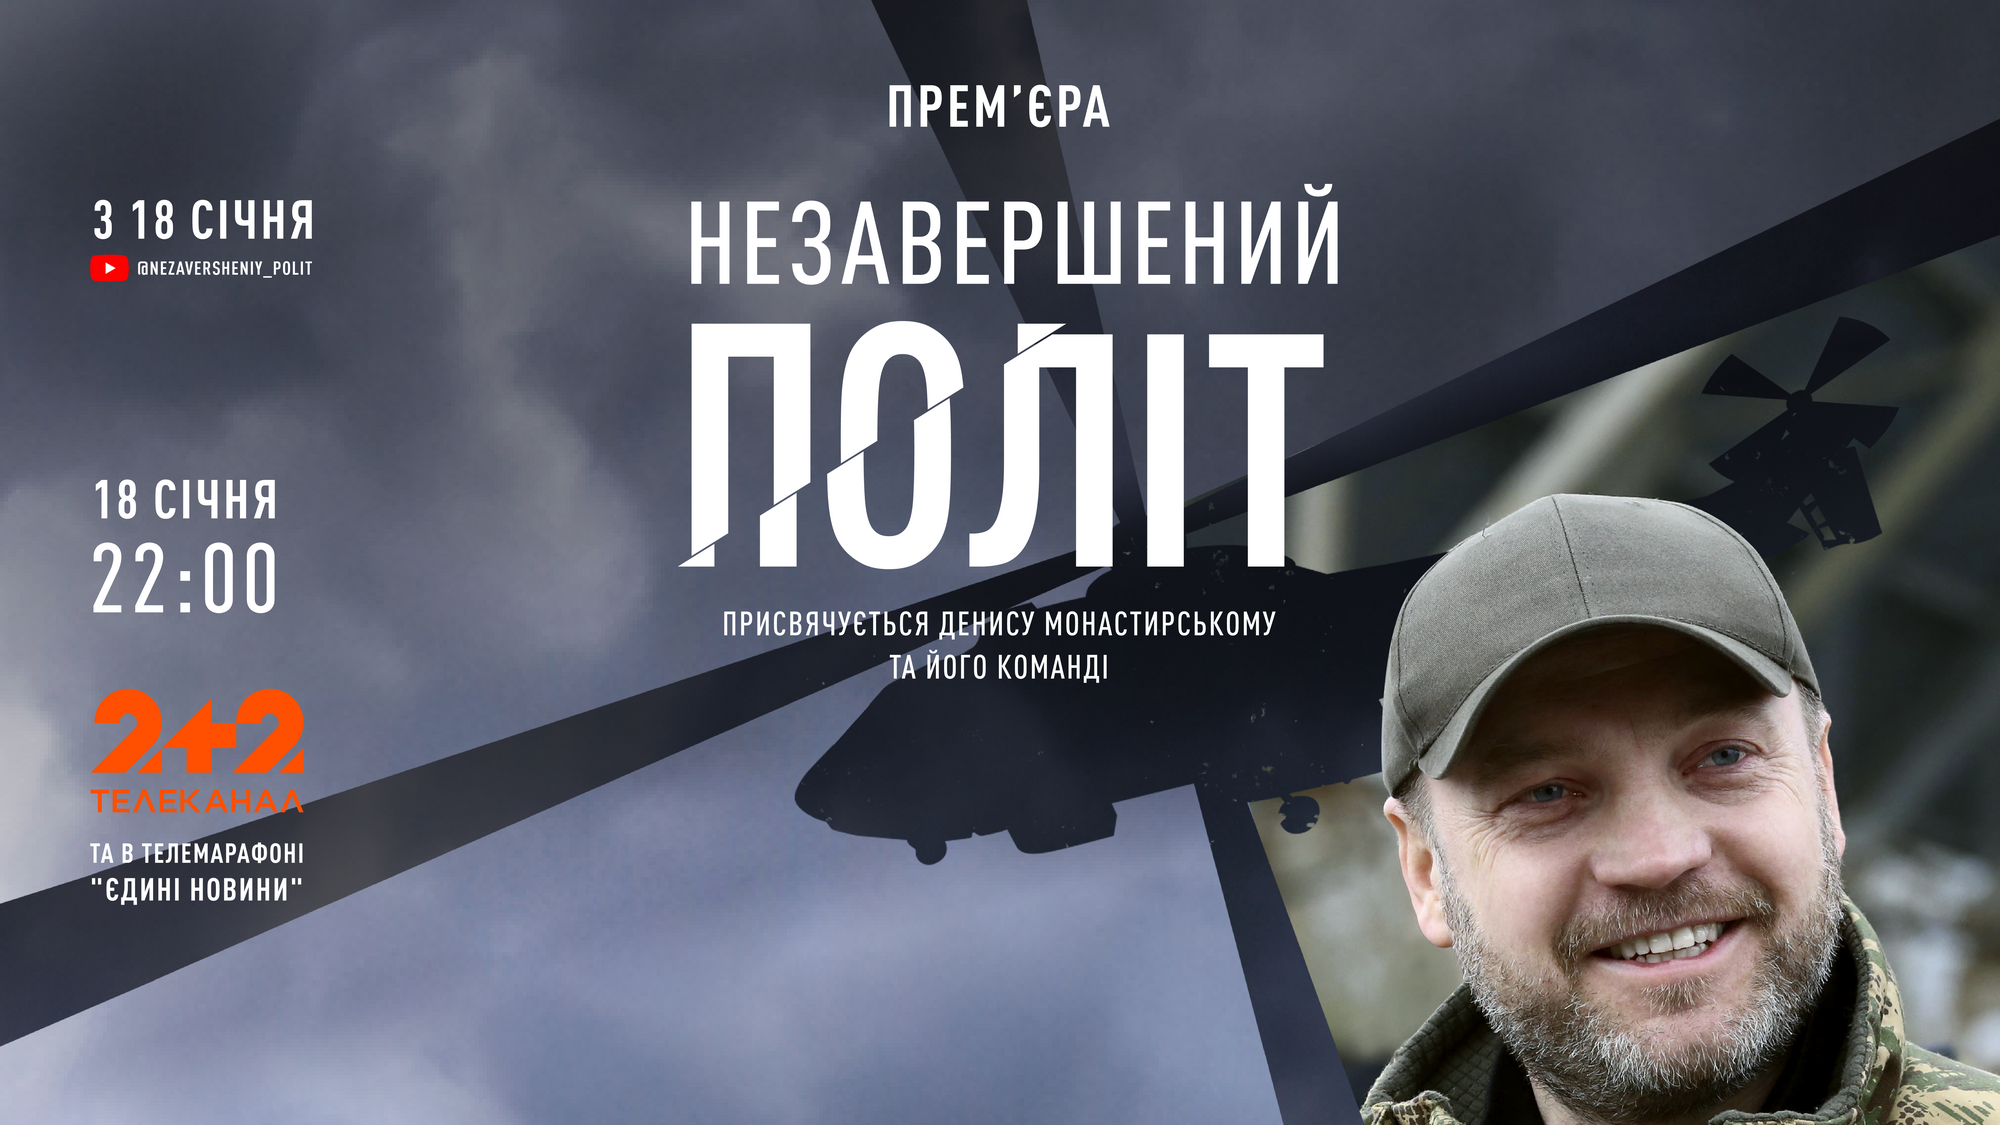 Опубликован документальный проект о Денисе Монастырском "Незавершенный полет"